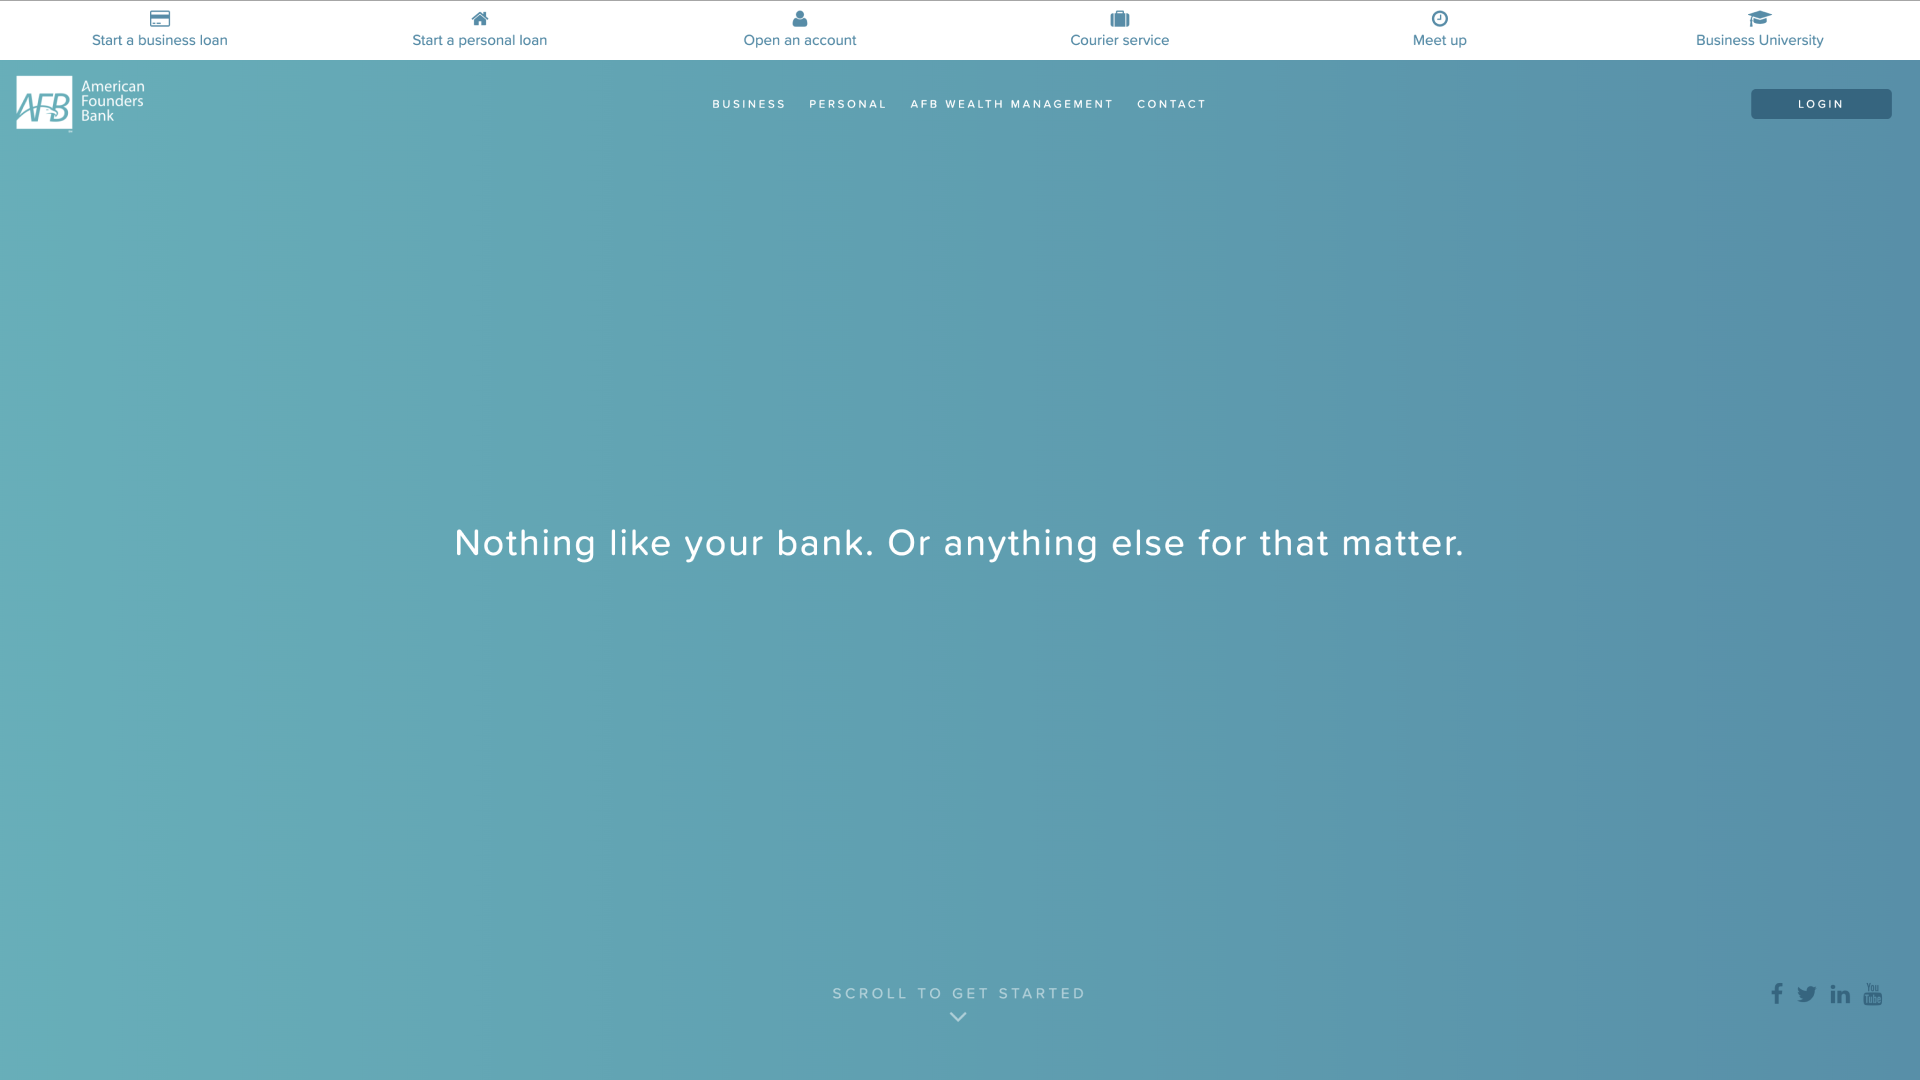 American Founders Bank website